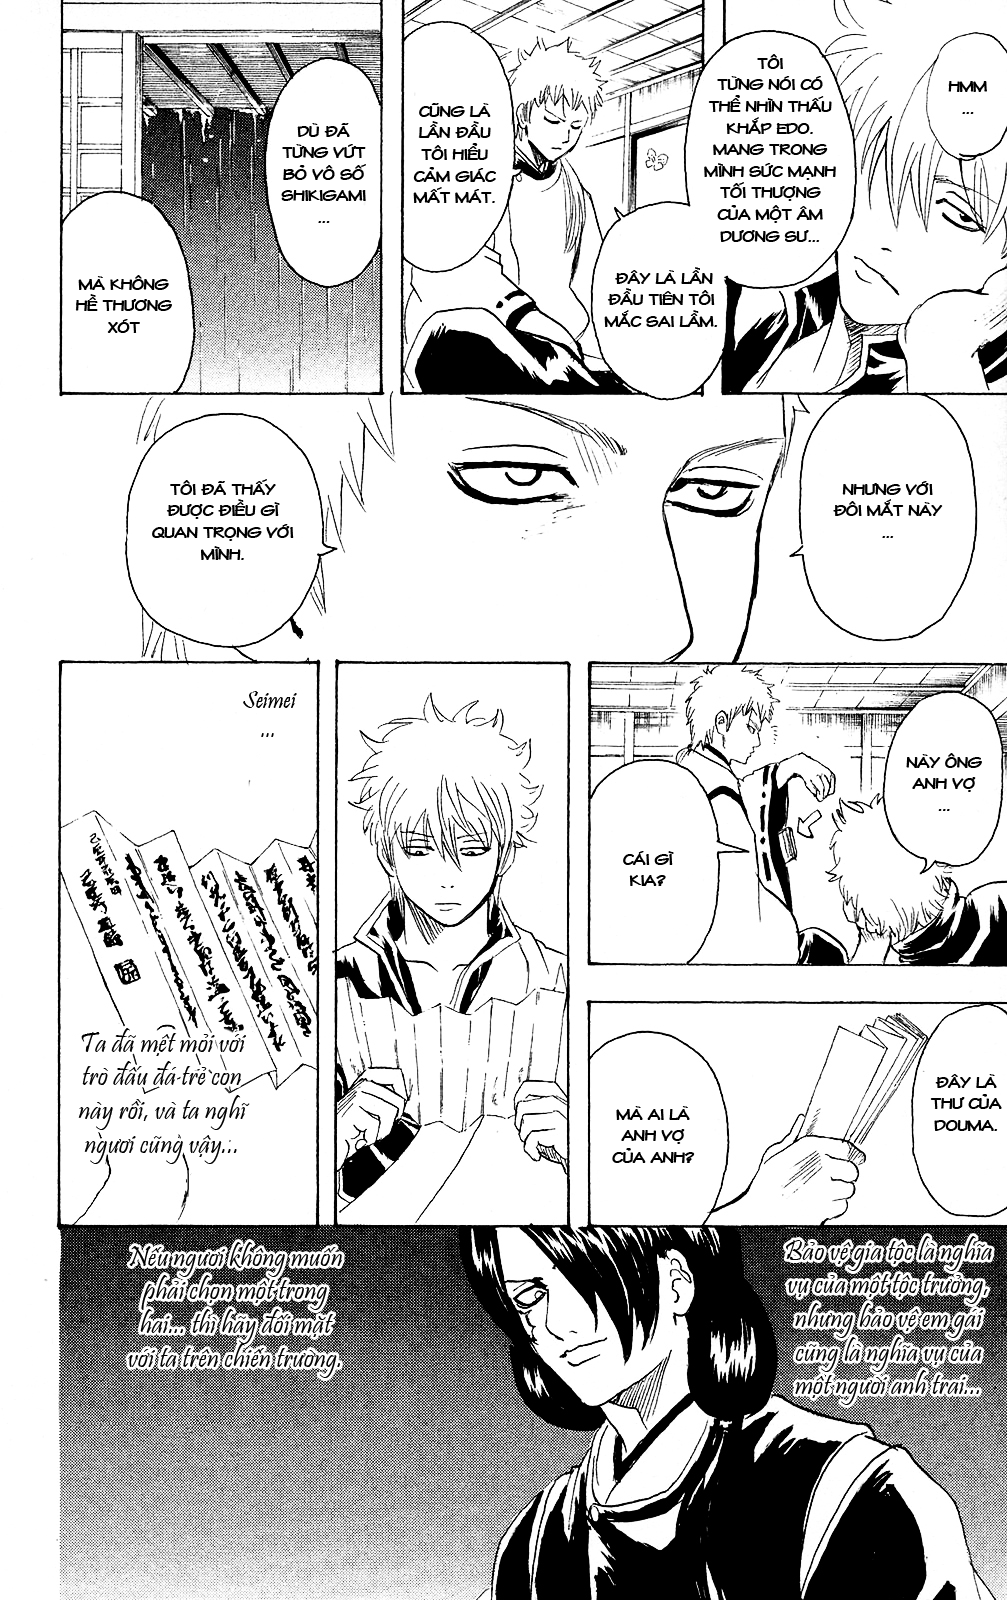 Gintama chapter 284 trang 9